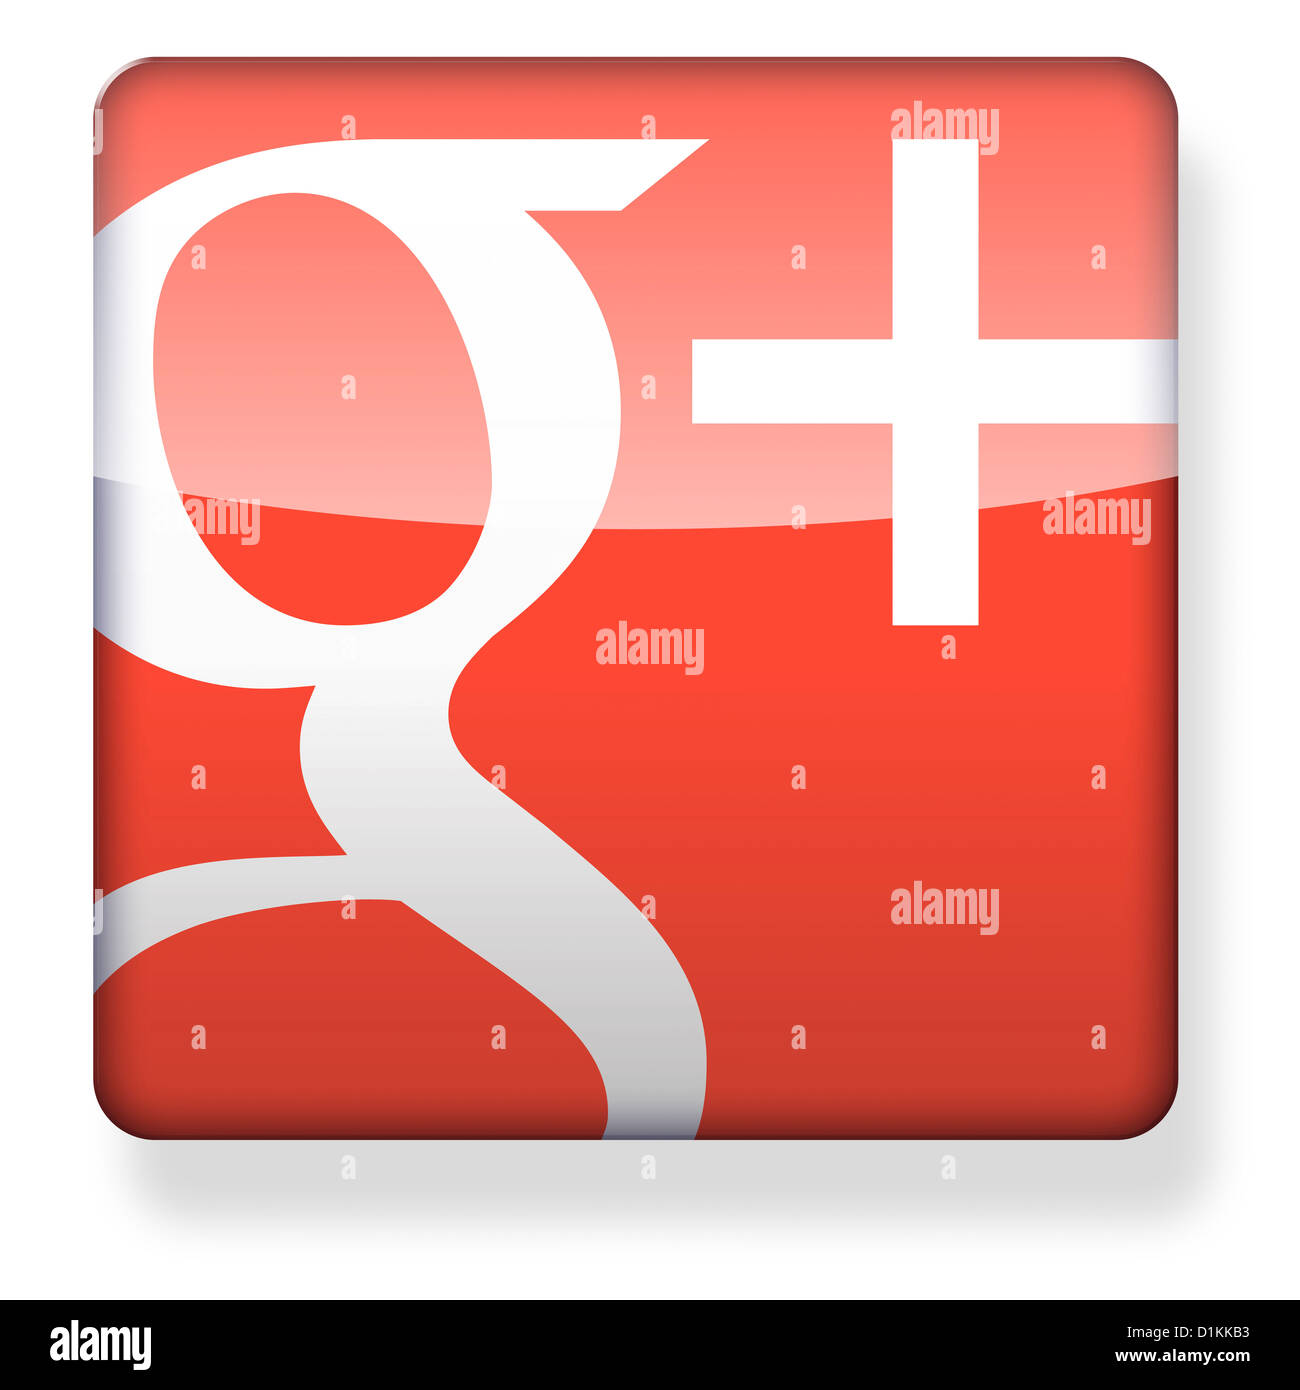 Google+ logo as an app icon Stock Photo